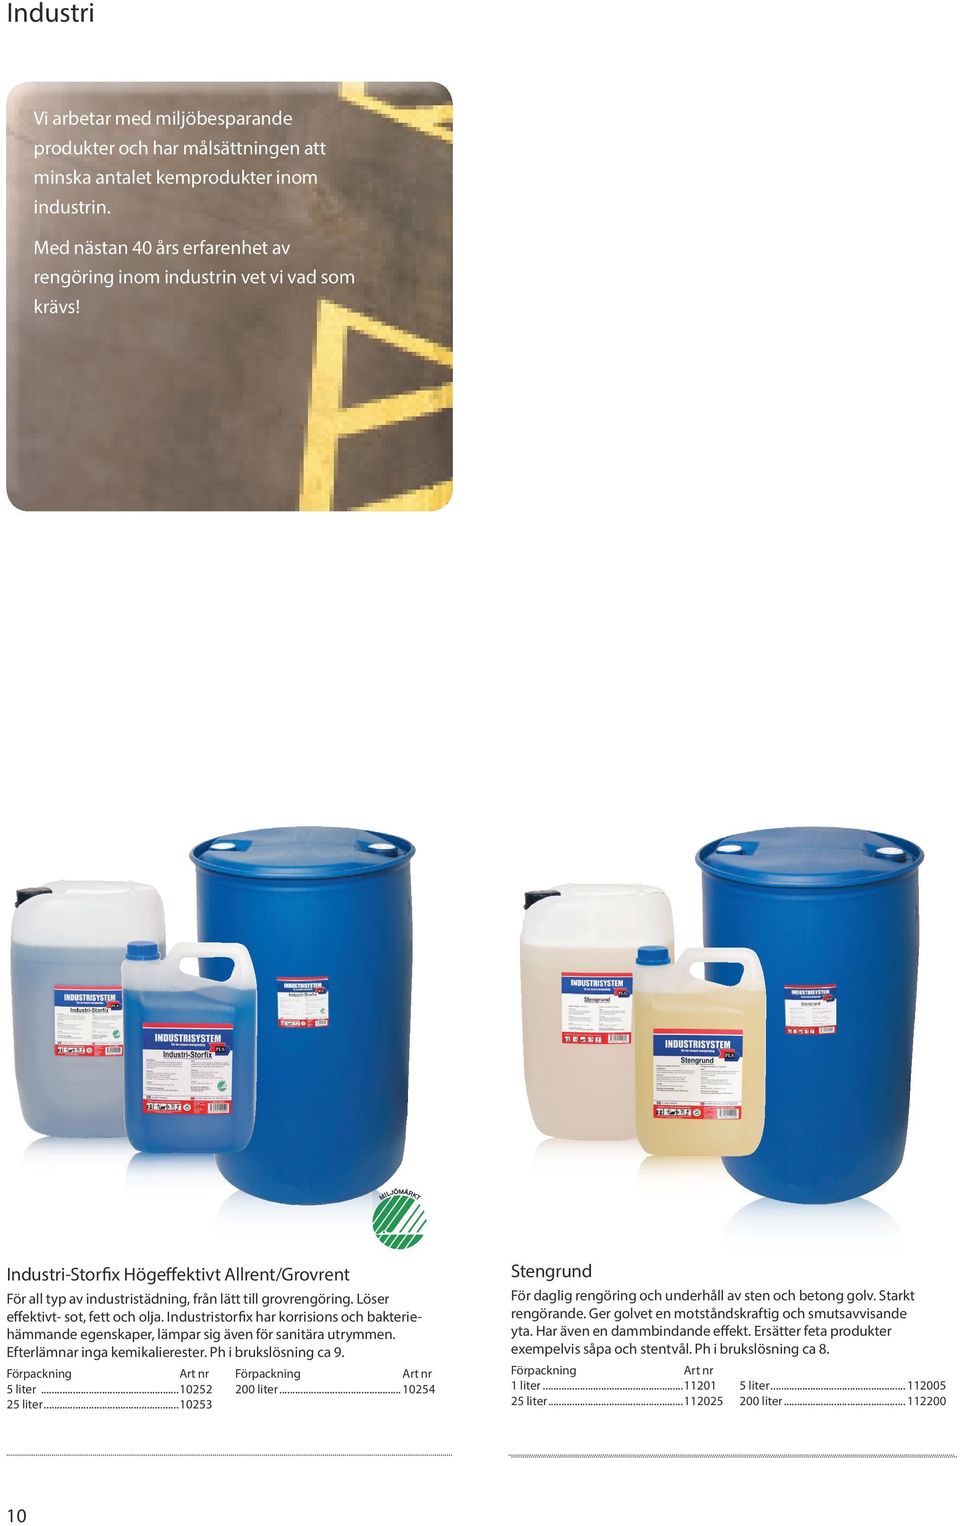 Industristorfix har korrisions och bakteriehämmande egenskaper, lämpar sig även för sanitära utrymmen. Efterlämnar inga kemikalierester. Ph i brukslösning ca 9. 5 liter...10252 200 liter.